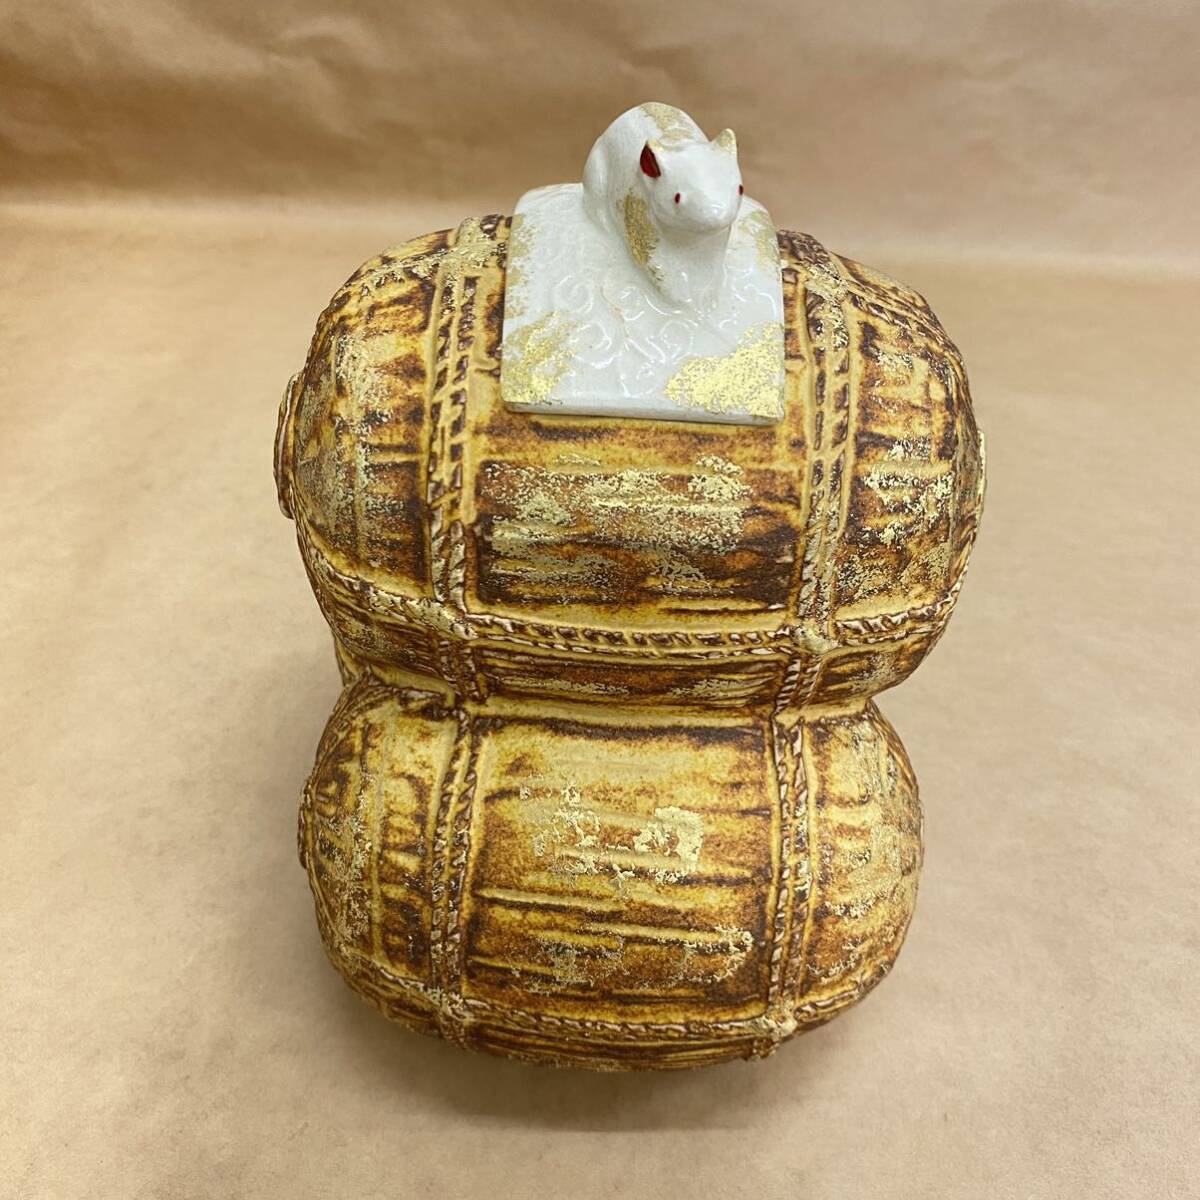 T66 прекрасный товар Kyoyaki камень рисовое поле ... удача .. украшение вместе коробка *. есть . главный украшение мышь рис ... предмет золотая краска антиквариат товар керамика 